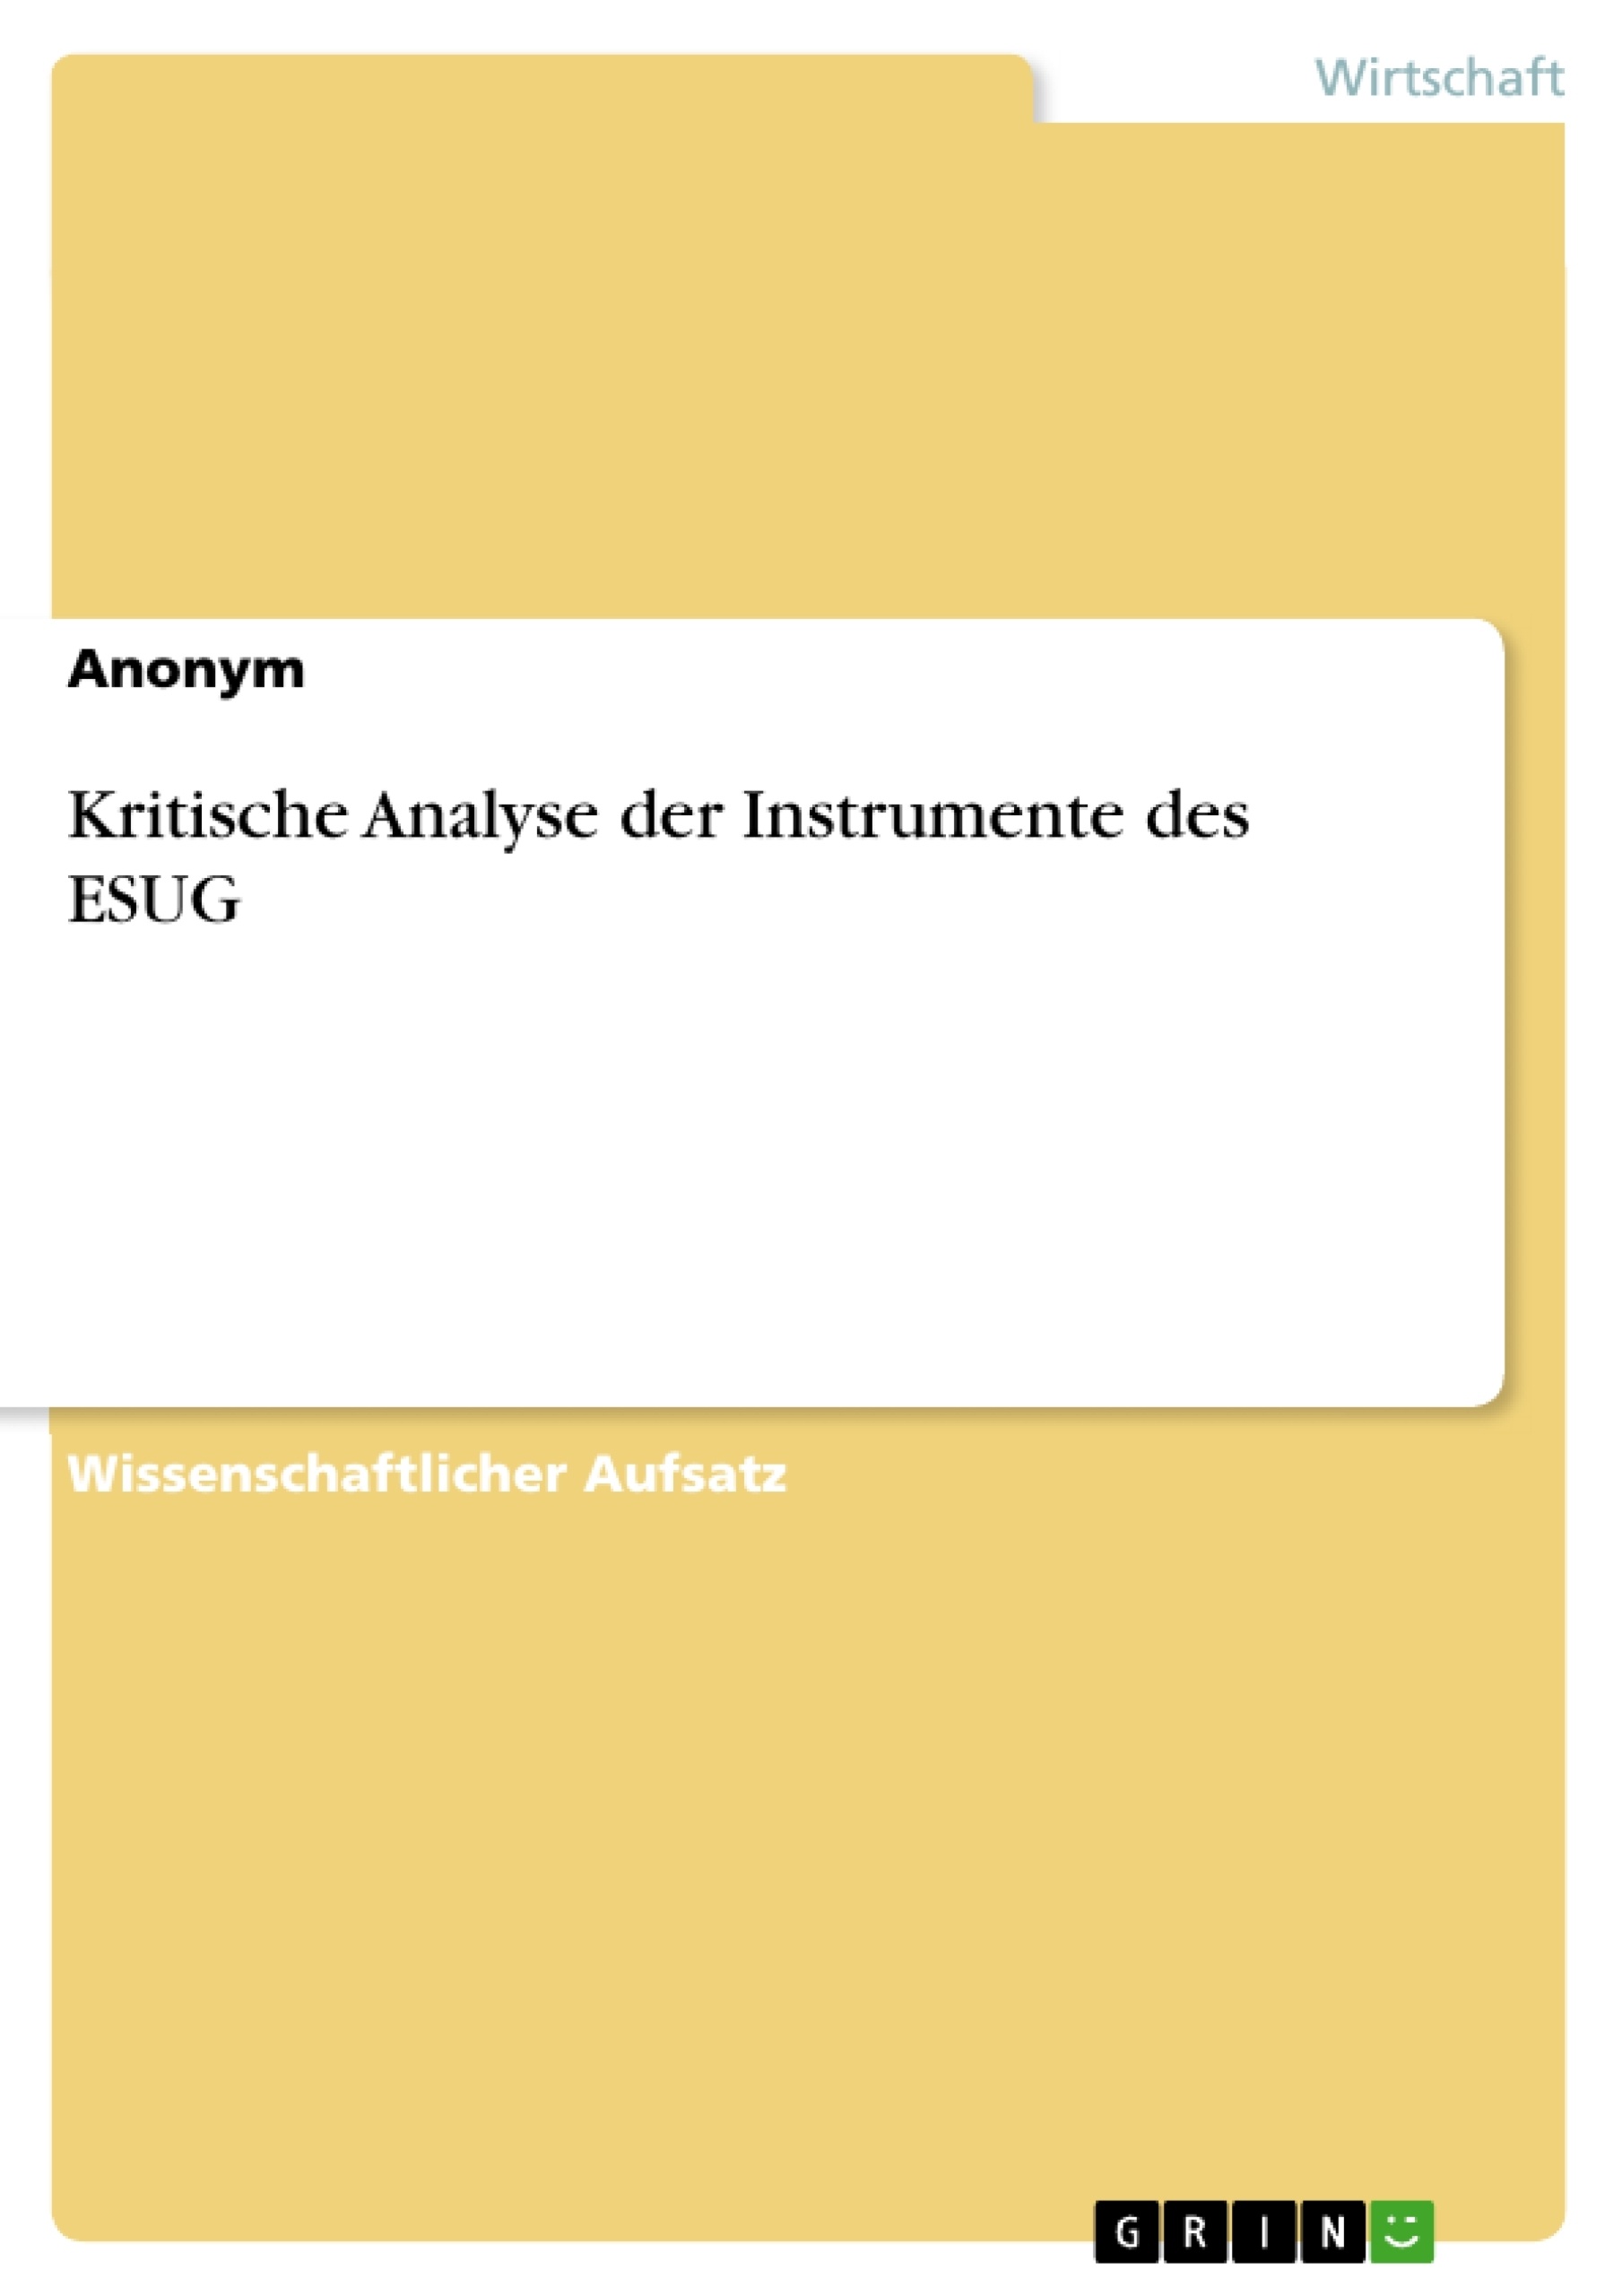 Title: Kritische Analyse der Instrumente des ESUG